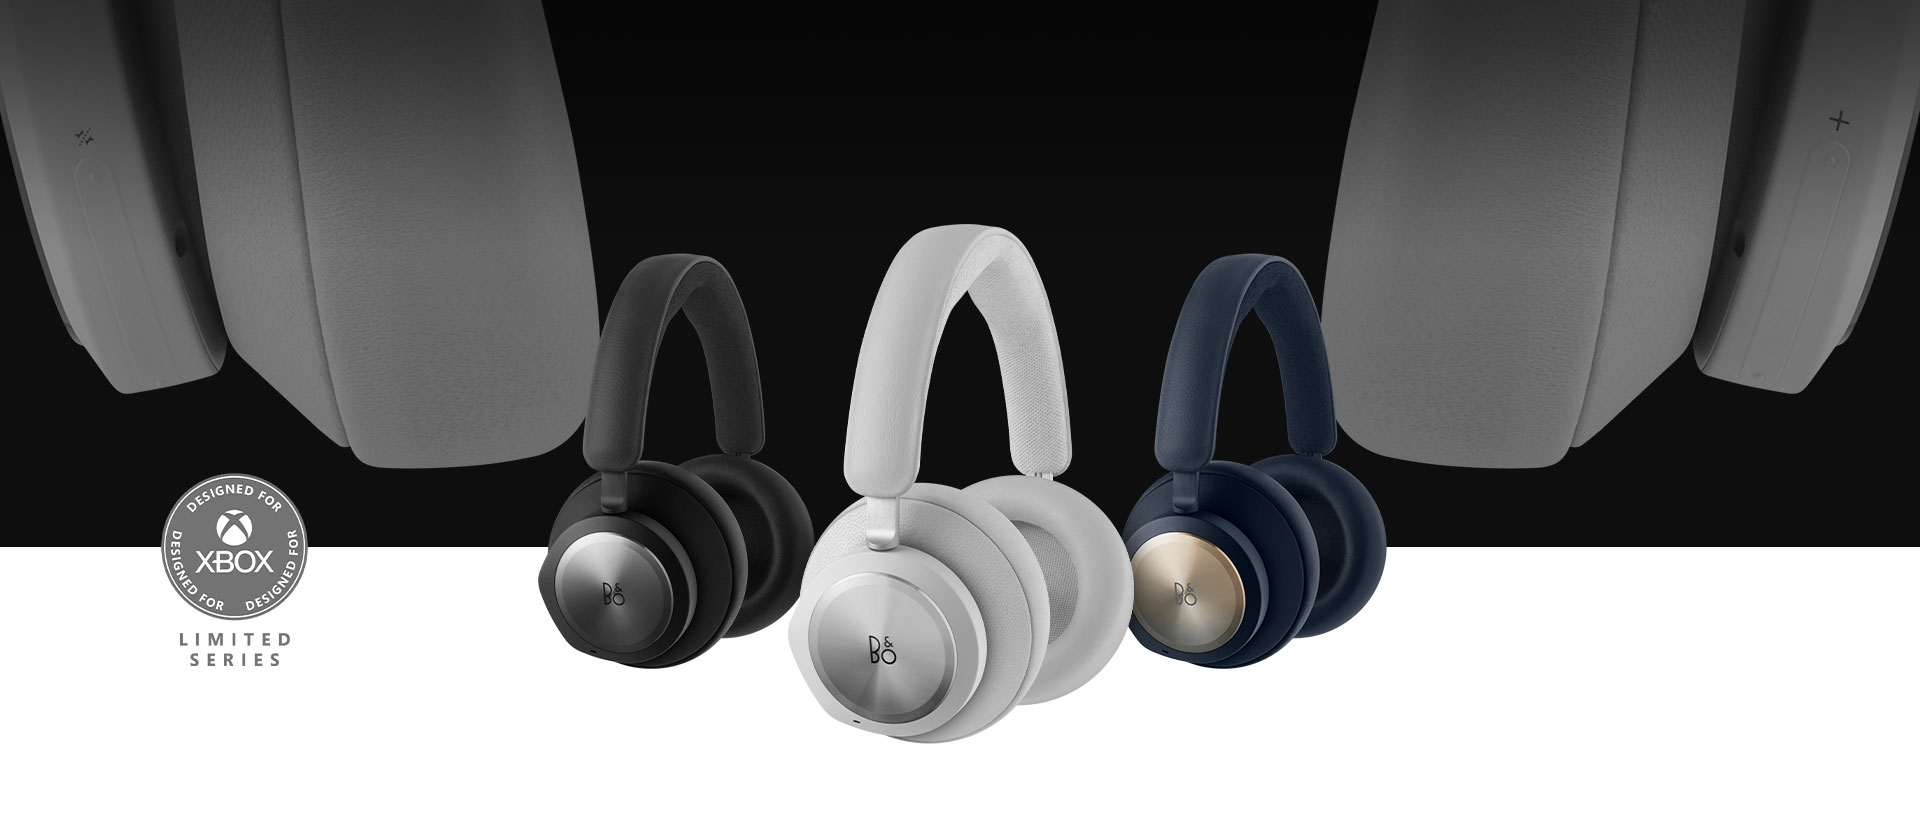 Diseñados para Xbox, cascos Bang & Olufsen grises al frente con los cascos negros y azul marino al lado